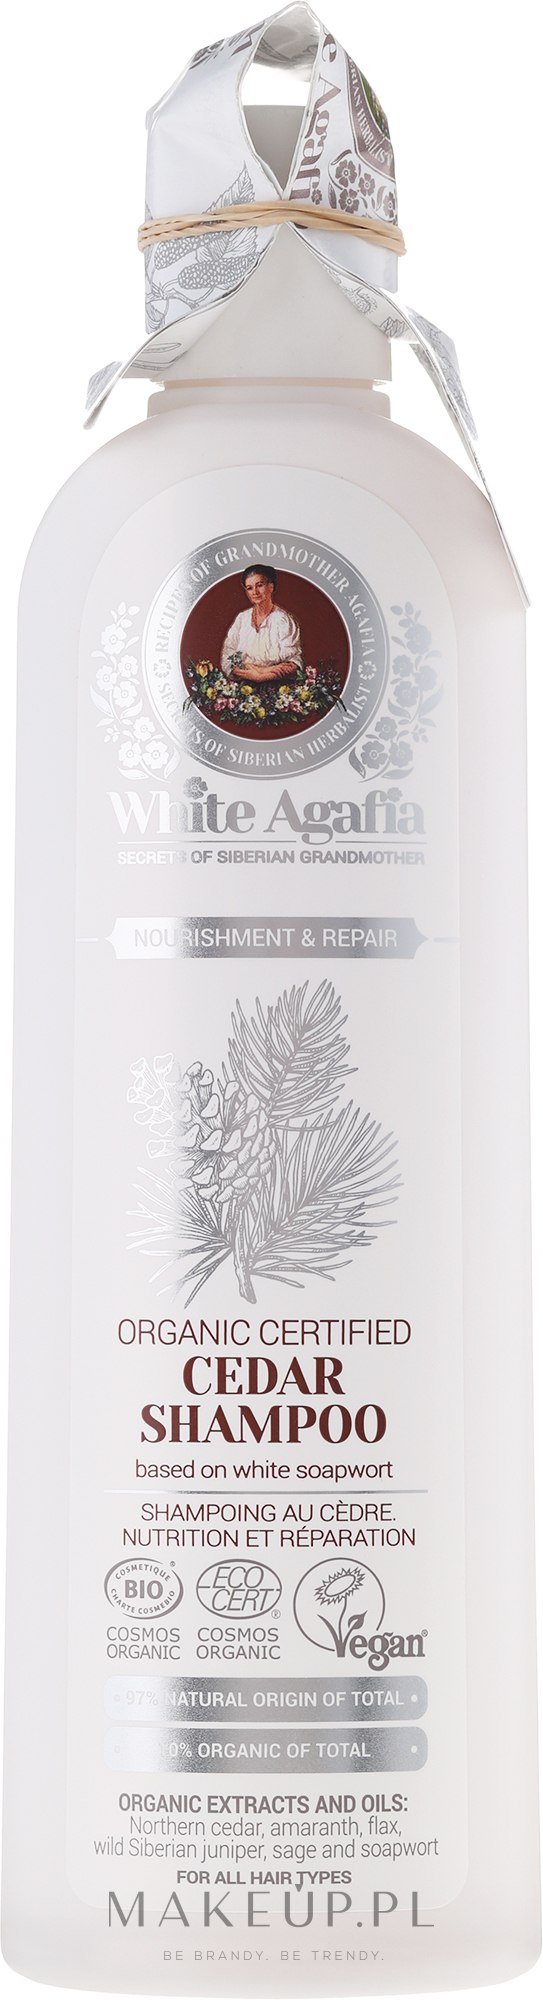 babcia agafia white brzozowy szampon